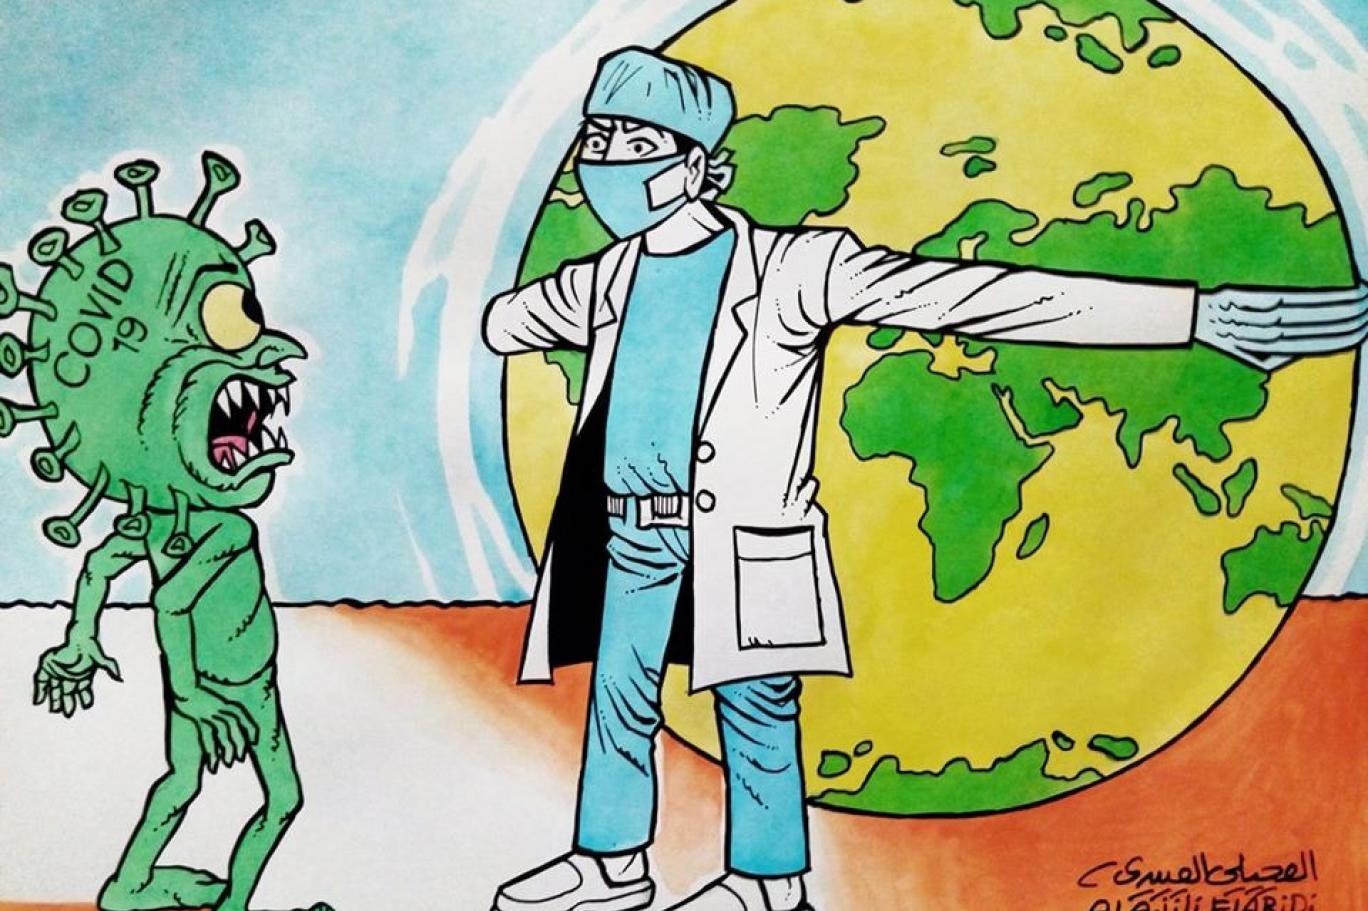 الرسم الكاريكاتوري عن البيئة الصحية